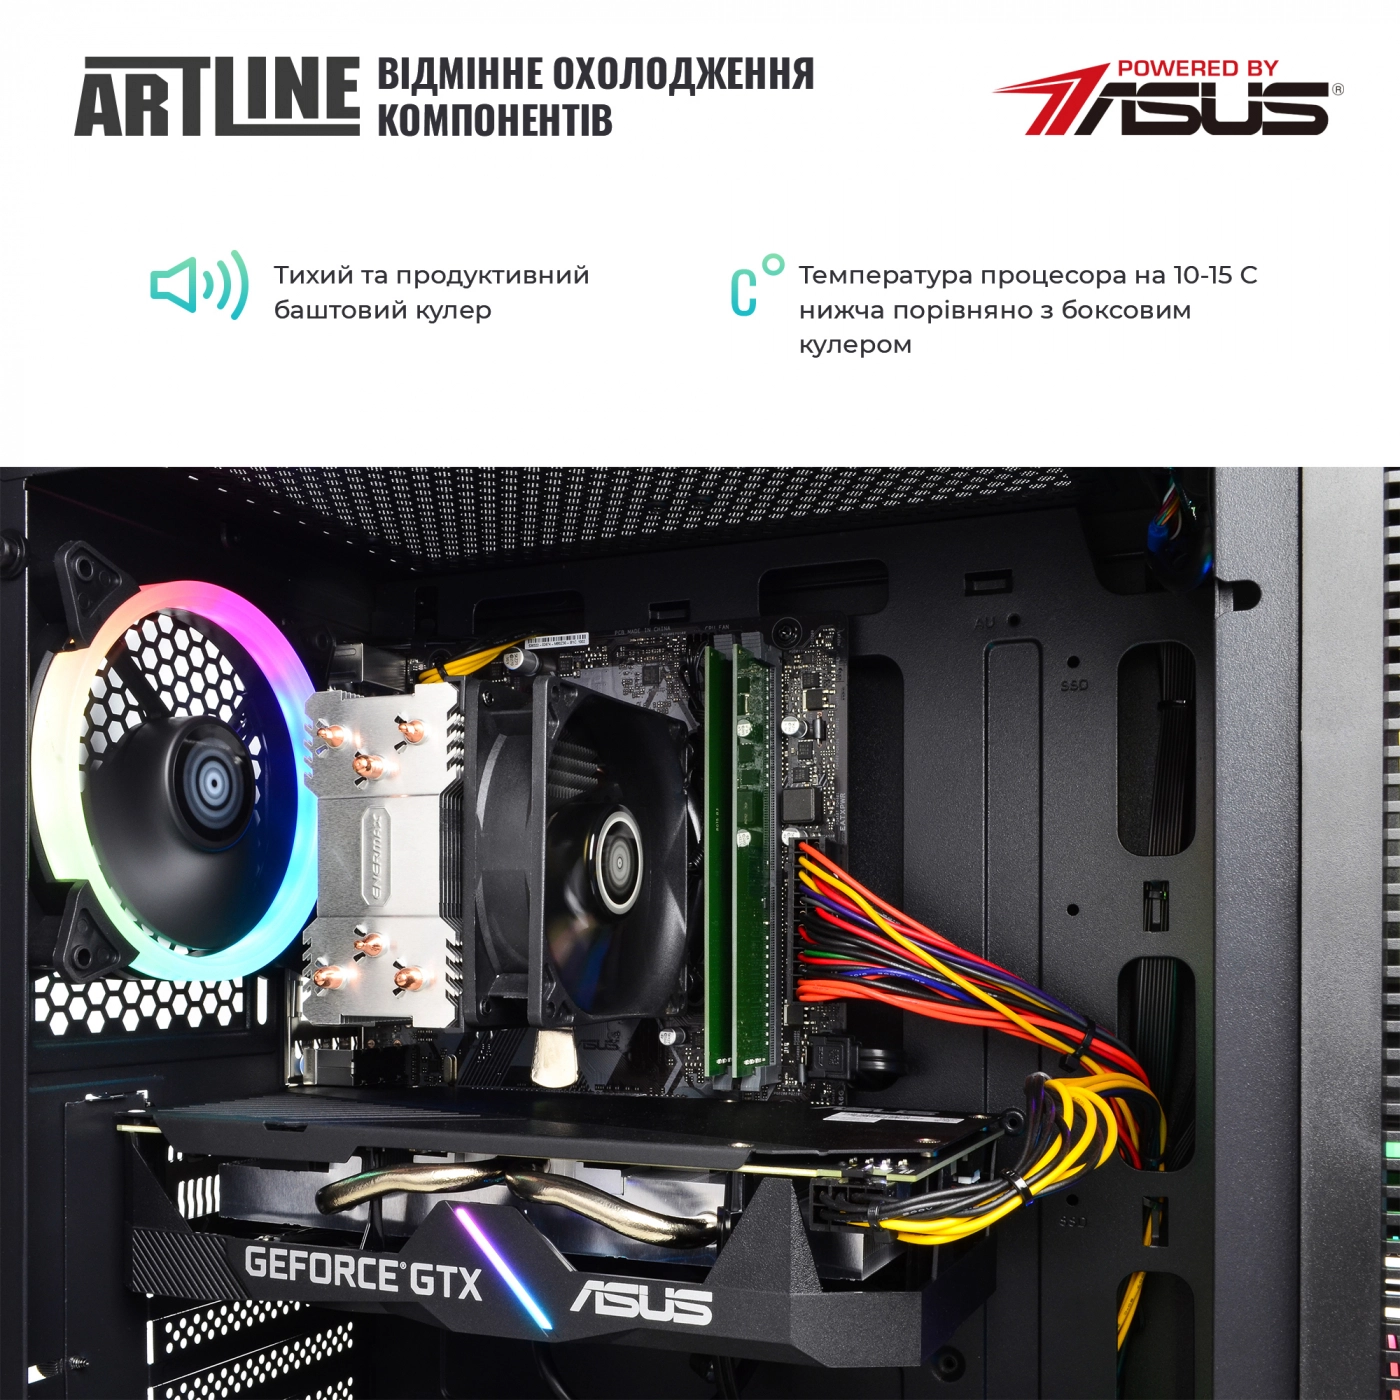 Купить Компьютер ARTLINE Gaming X65v29 - фото 3